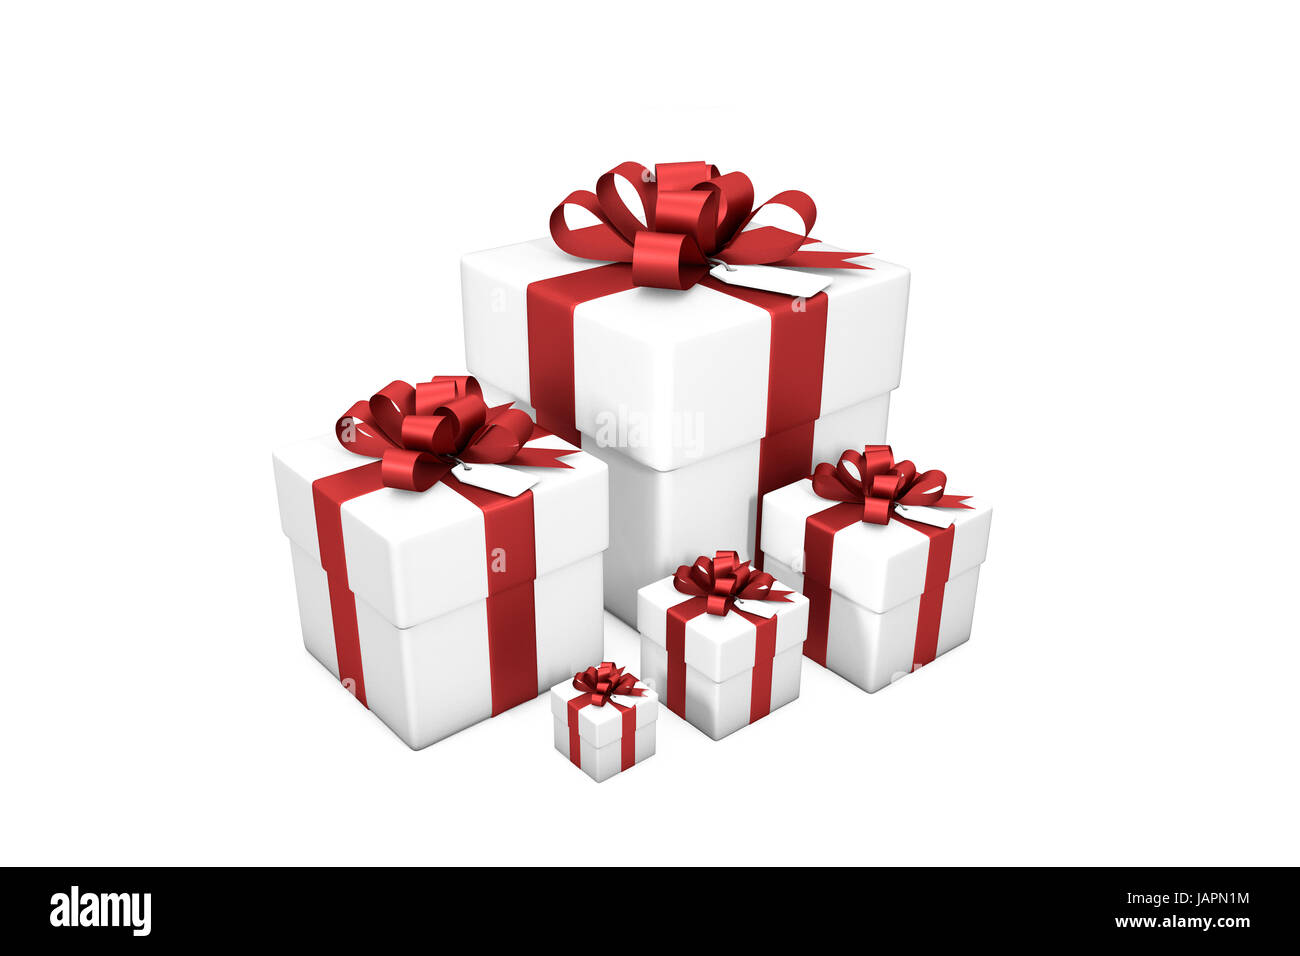 3d immagine: bianco cinque confezioni regalo da piccole a grandi dimensioni in ordine di grandezza con seta rossa / Nastro di prua e tag su uno sfondo bianco isolato. Foto Stock